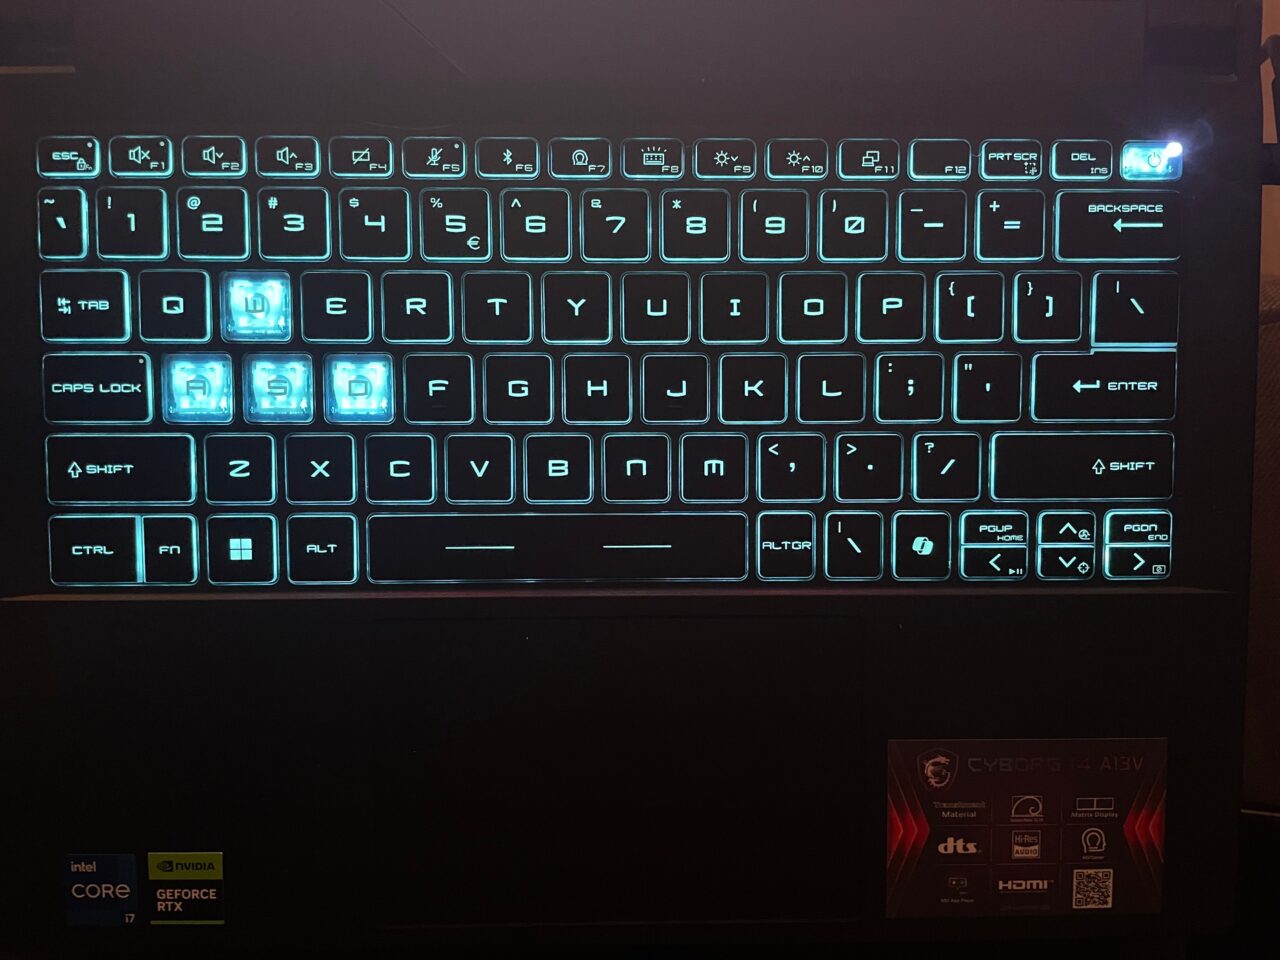 Podświetlana klawiatura komputerowa z wyeksponowanymi klawiszami WASD i znakami graficznymi na klawiszach funkcji, oraz naklejkami Intel Core i7 i NVIDIA GeForce RTX na dolnej ramce.